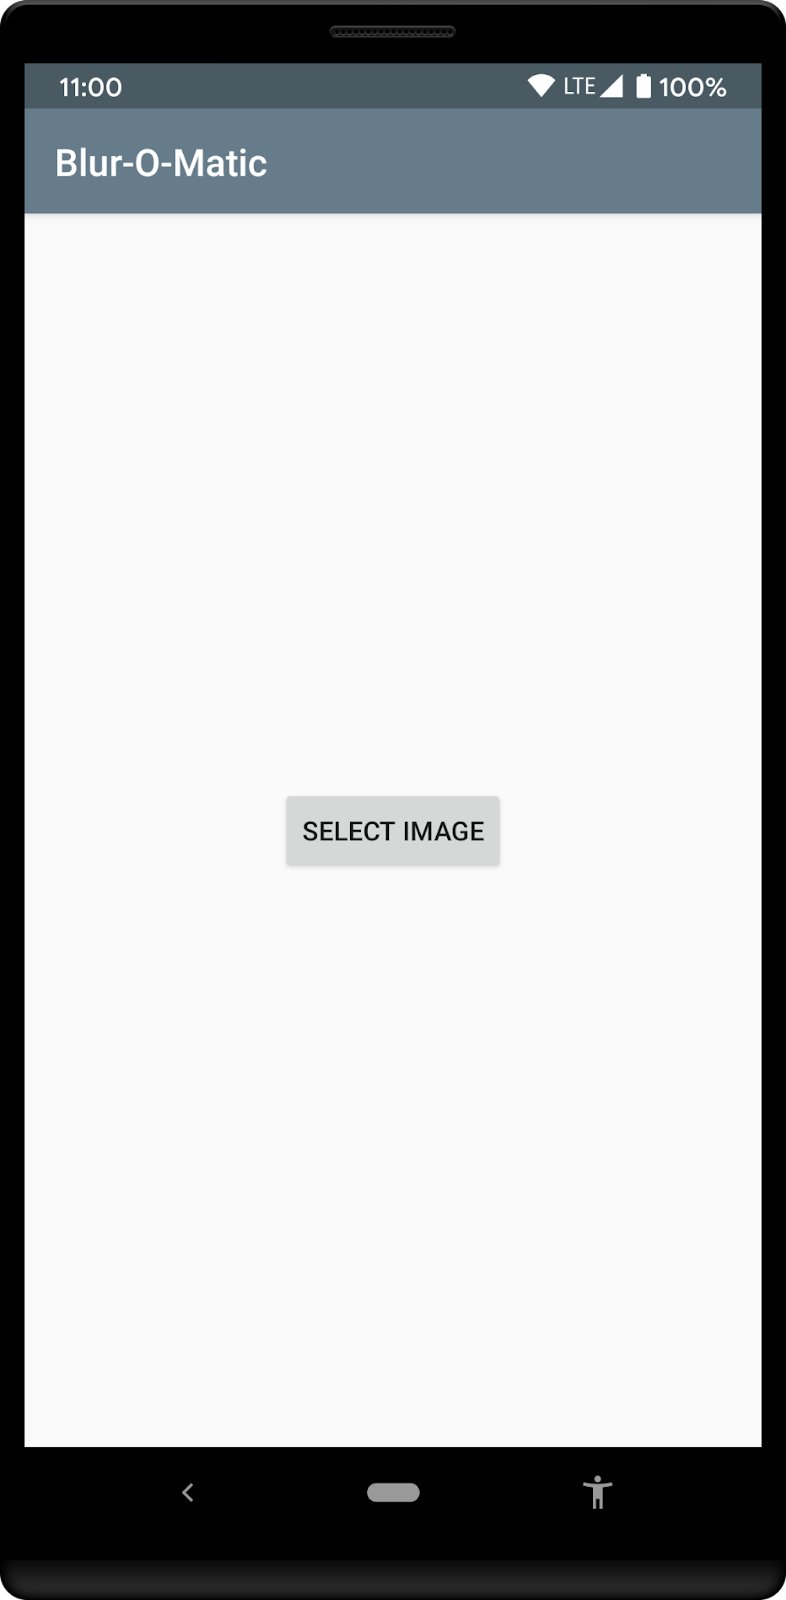 Tela inicial do app que solicita que o usuário selecione uma imagem da galeria de fotos.